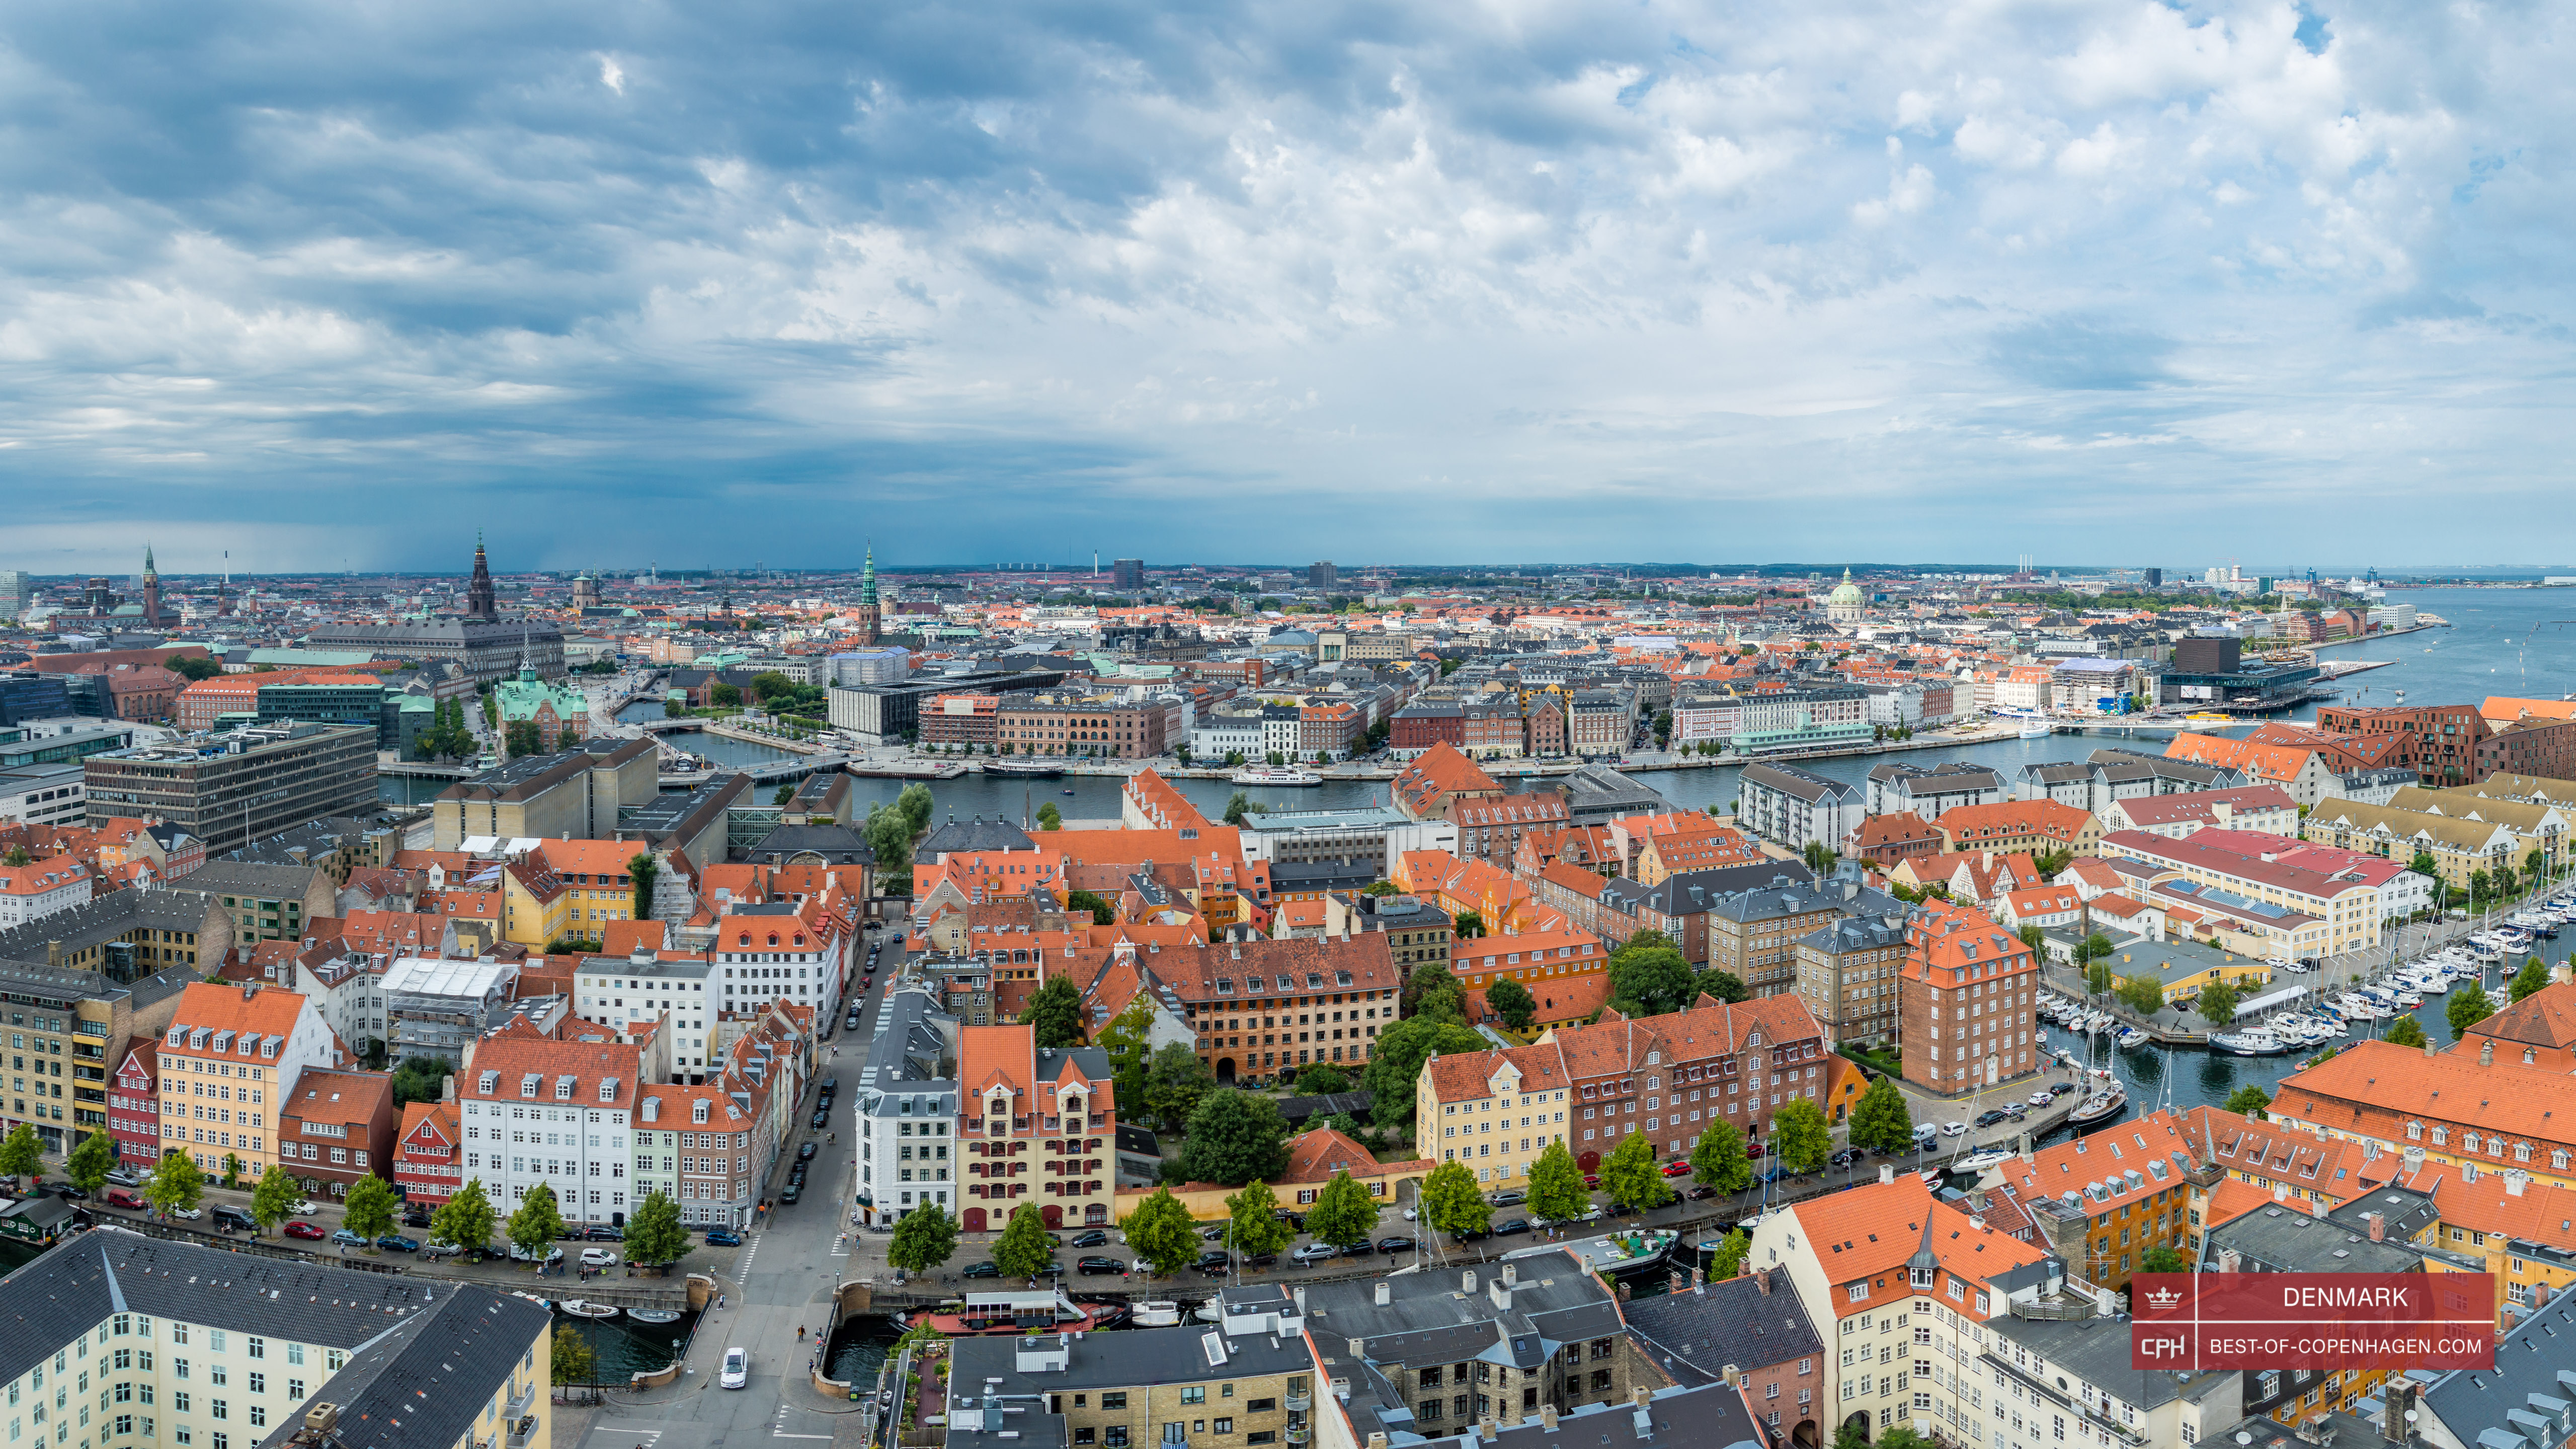 Vista panoramica dalla guglia della chiesa del Nostro Redentore, Copenaghen, Danimarca